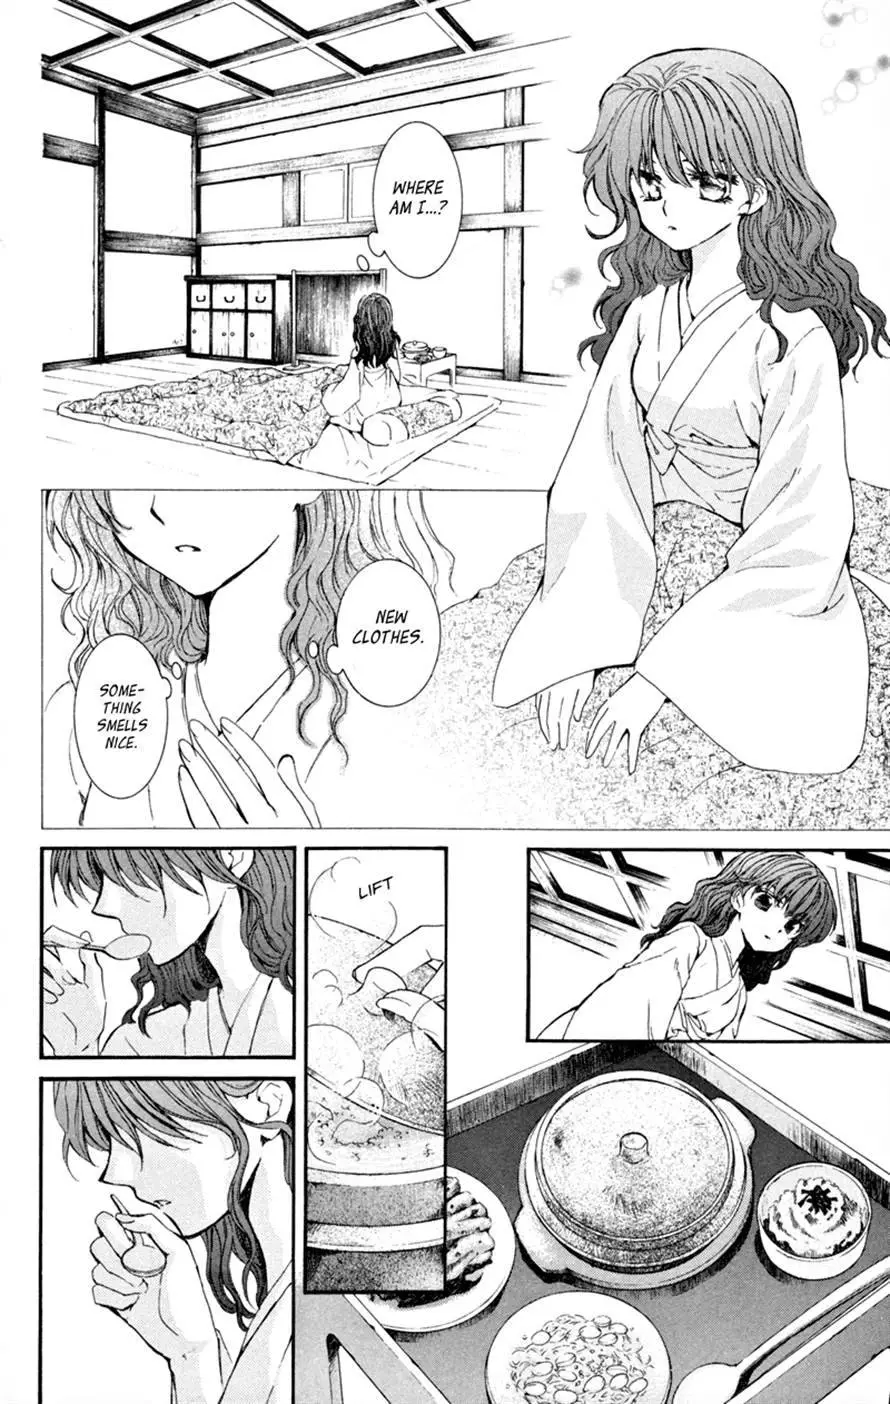 Akatsuki no Yona - 6 page p_00023